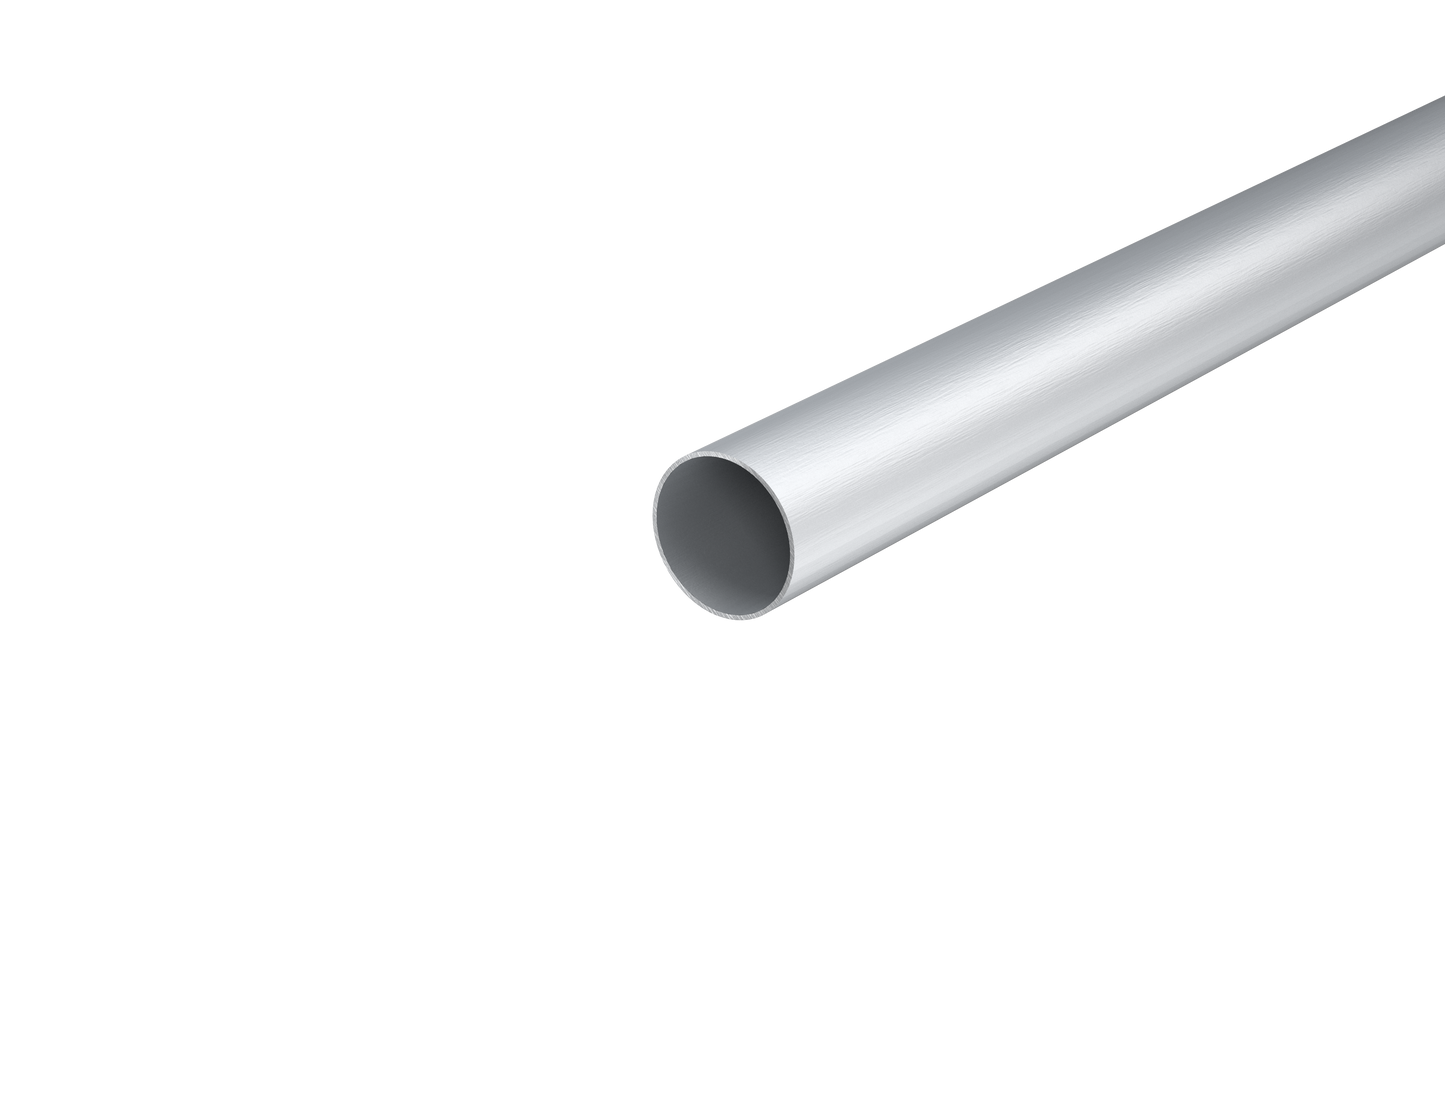 1-3/8" Aluminum Round Telescopic Tube